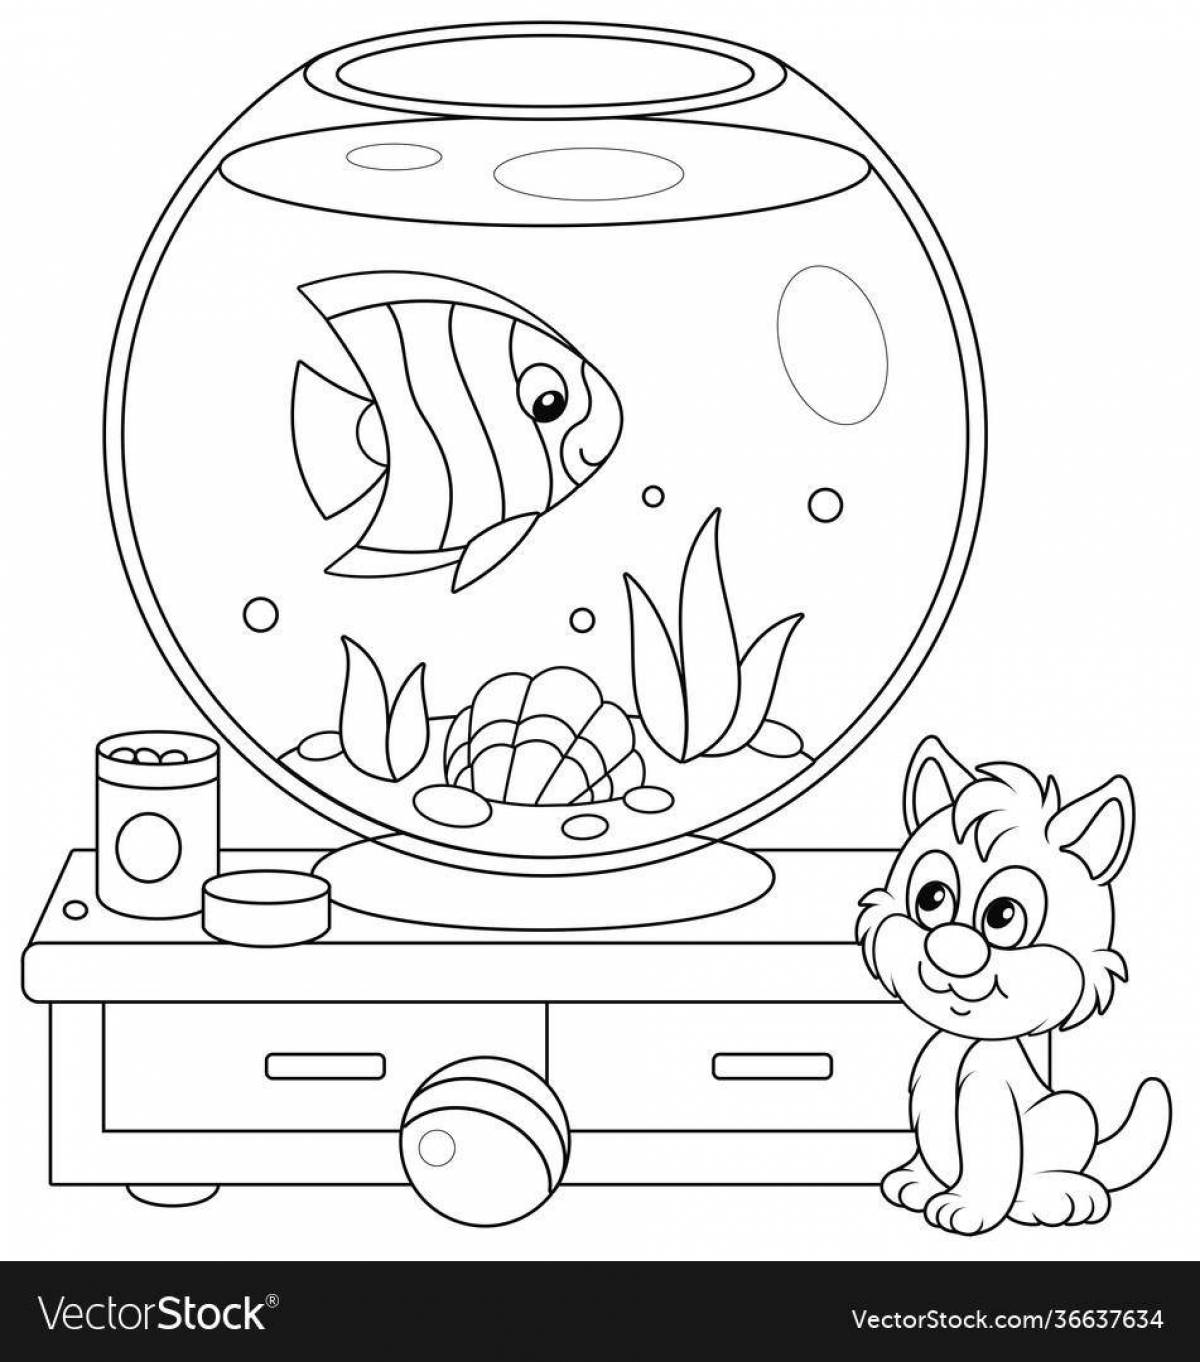 Пустой аквариум для детей #2